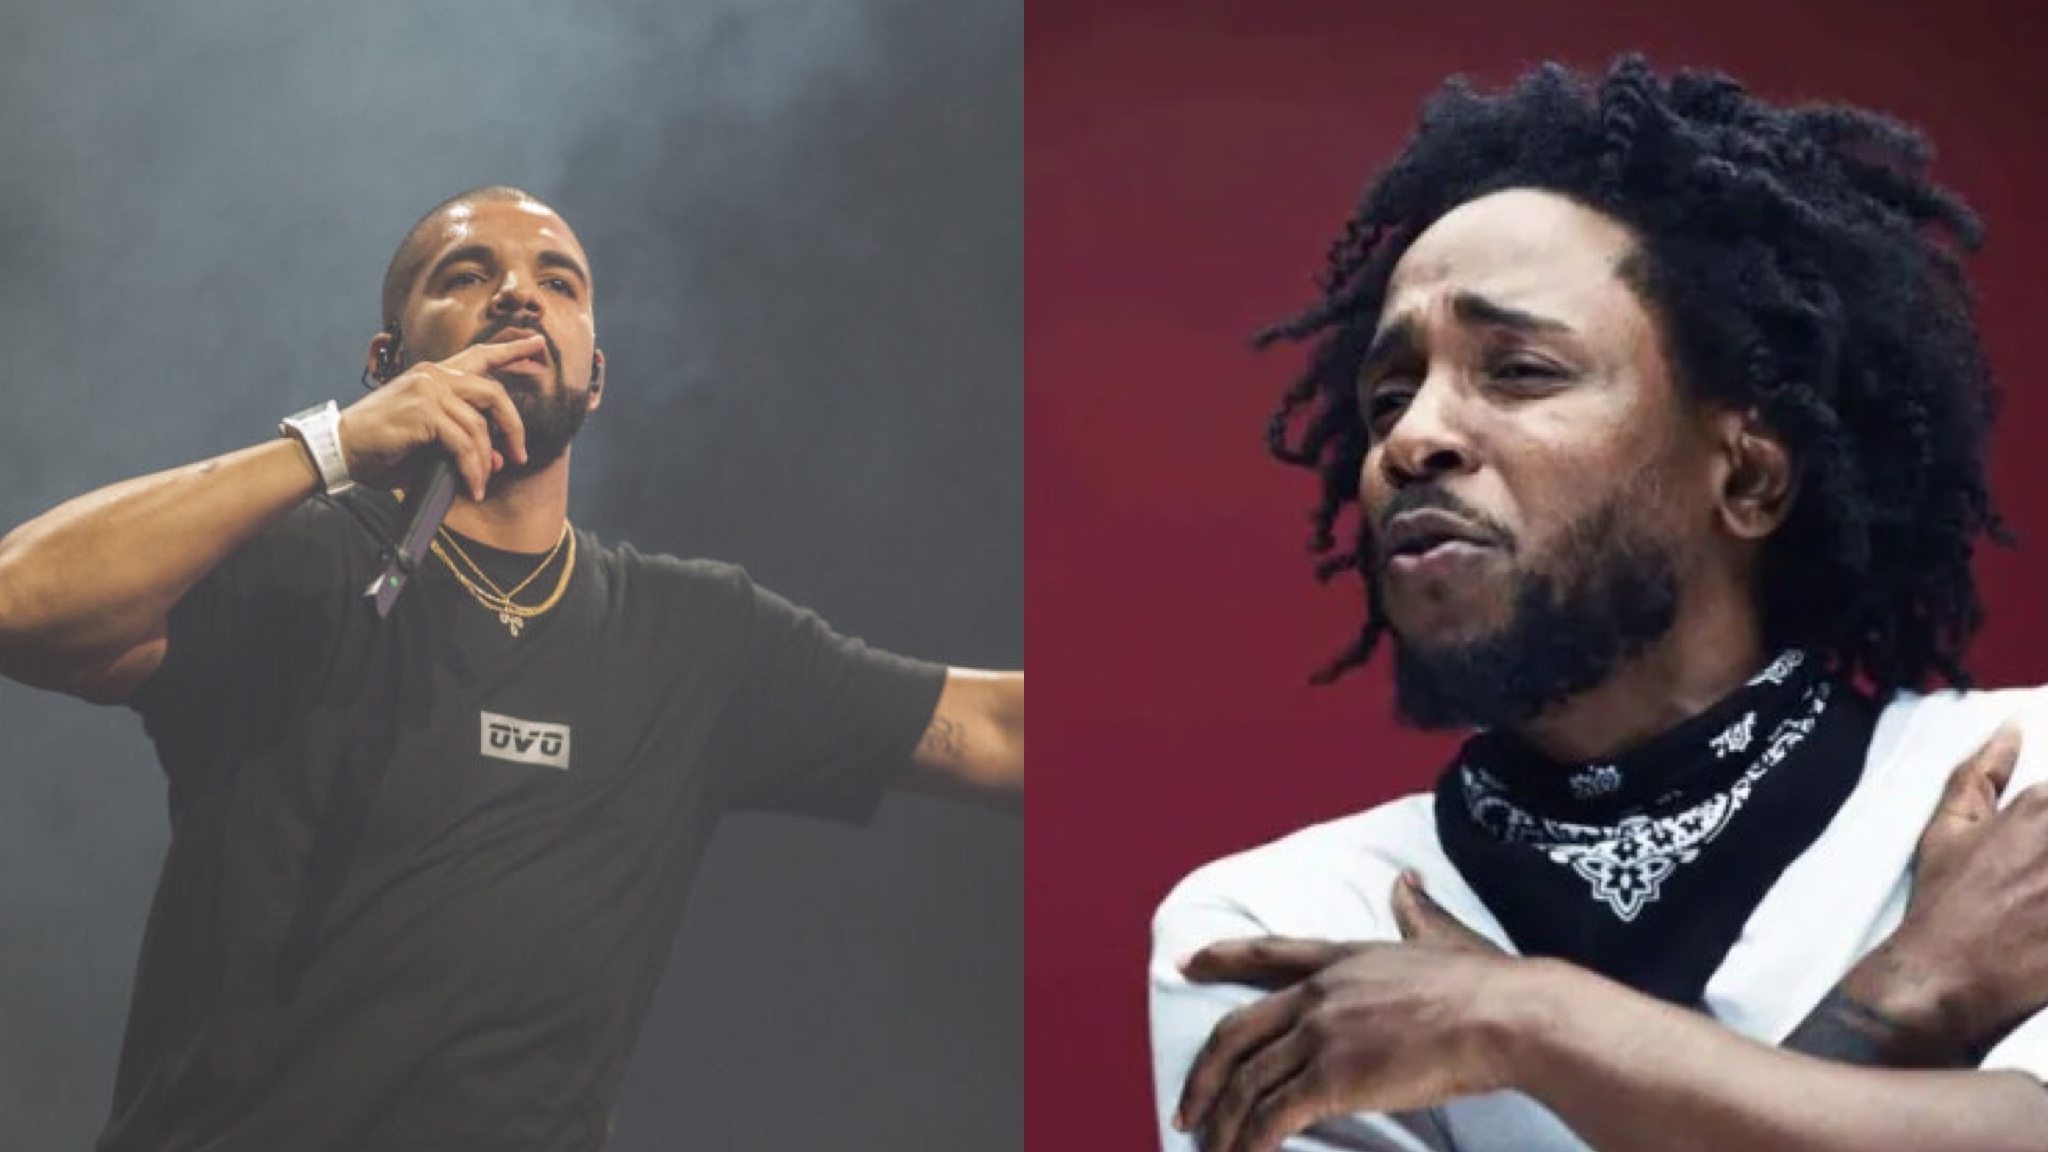     Kendrick Lamar vs Drake : qui remportera la bataille ?

